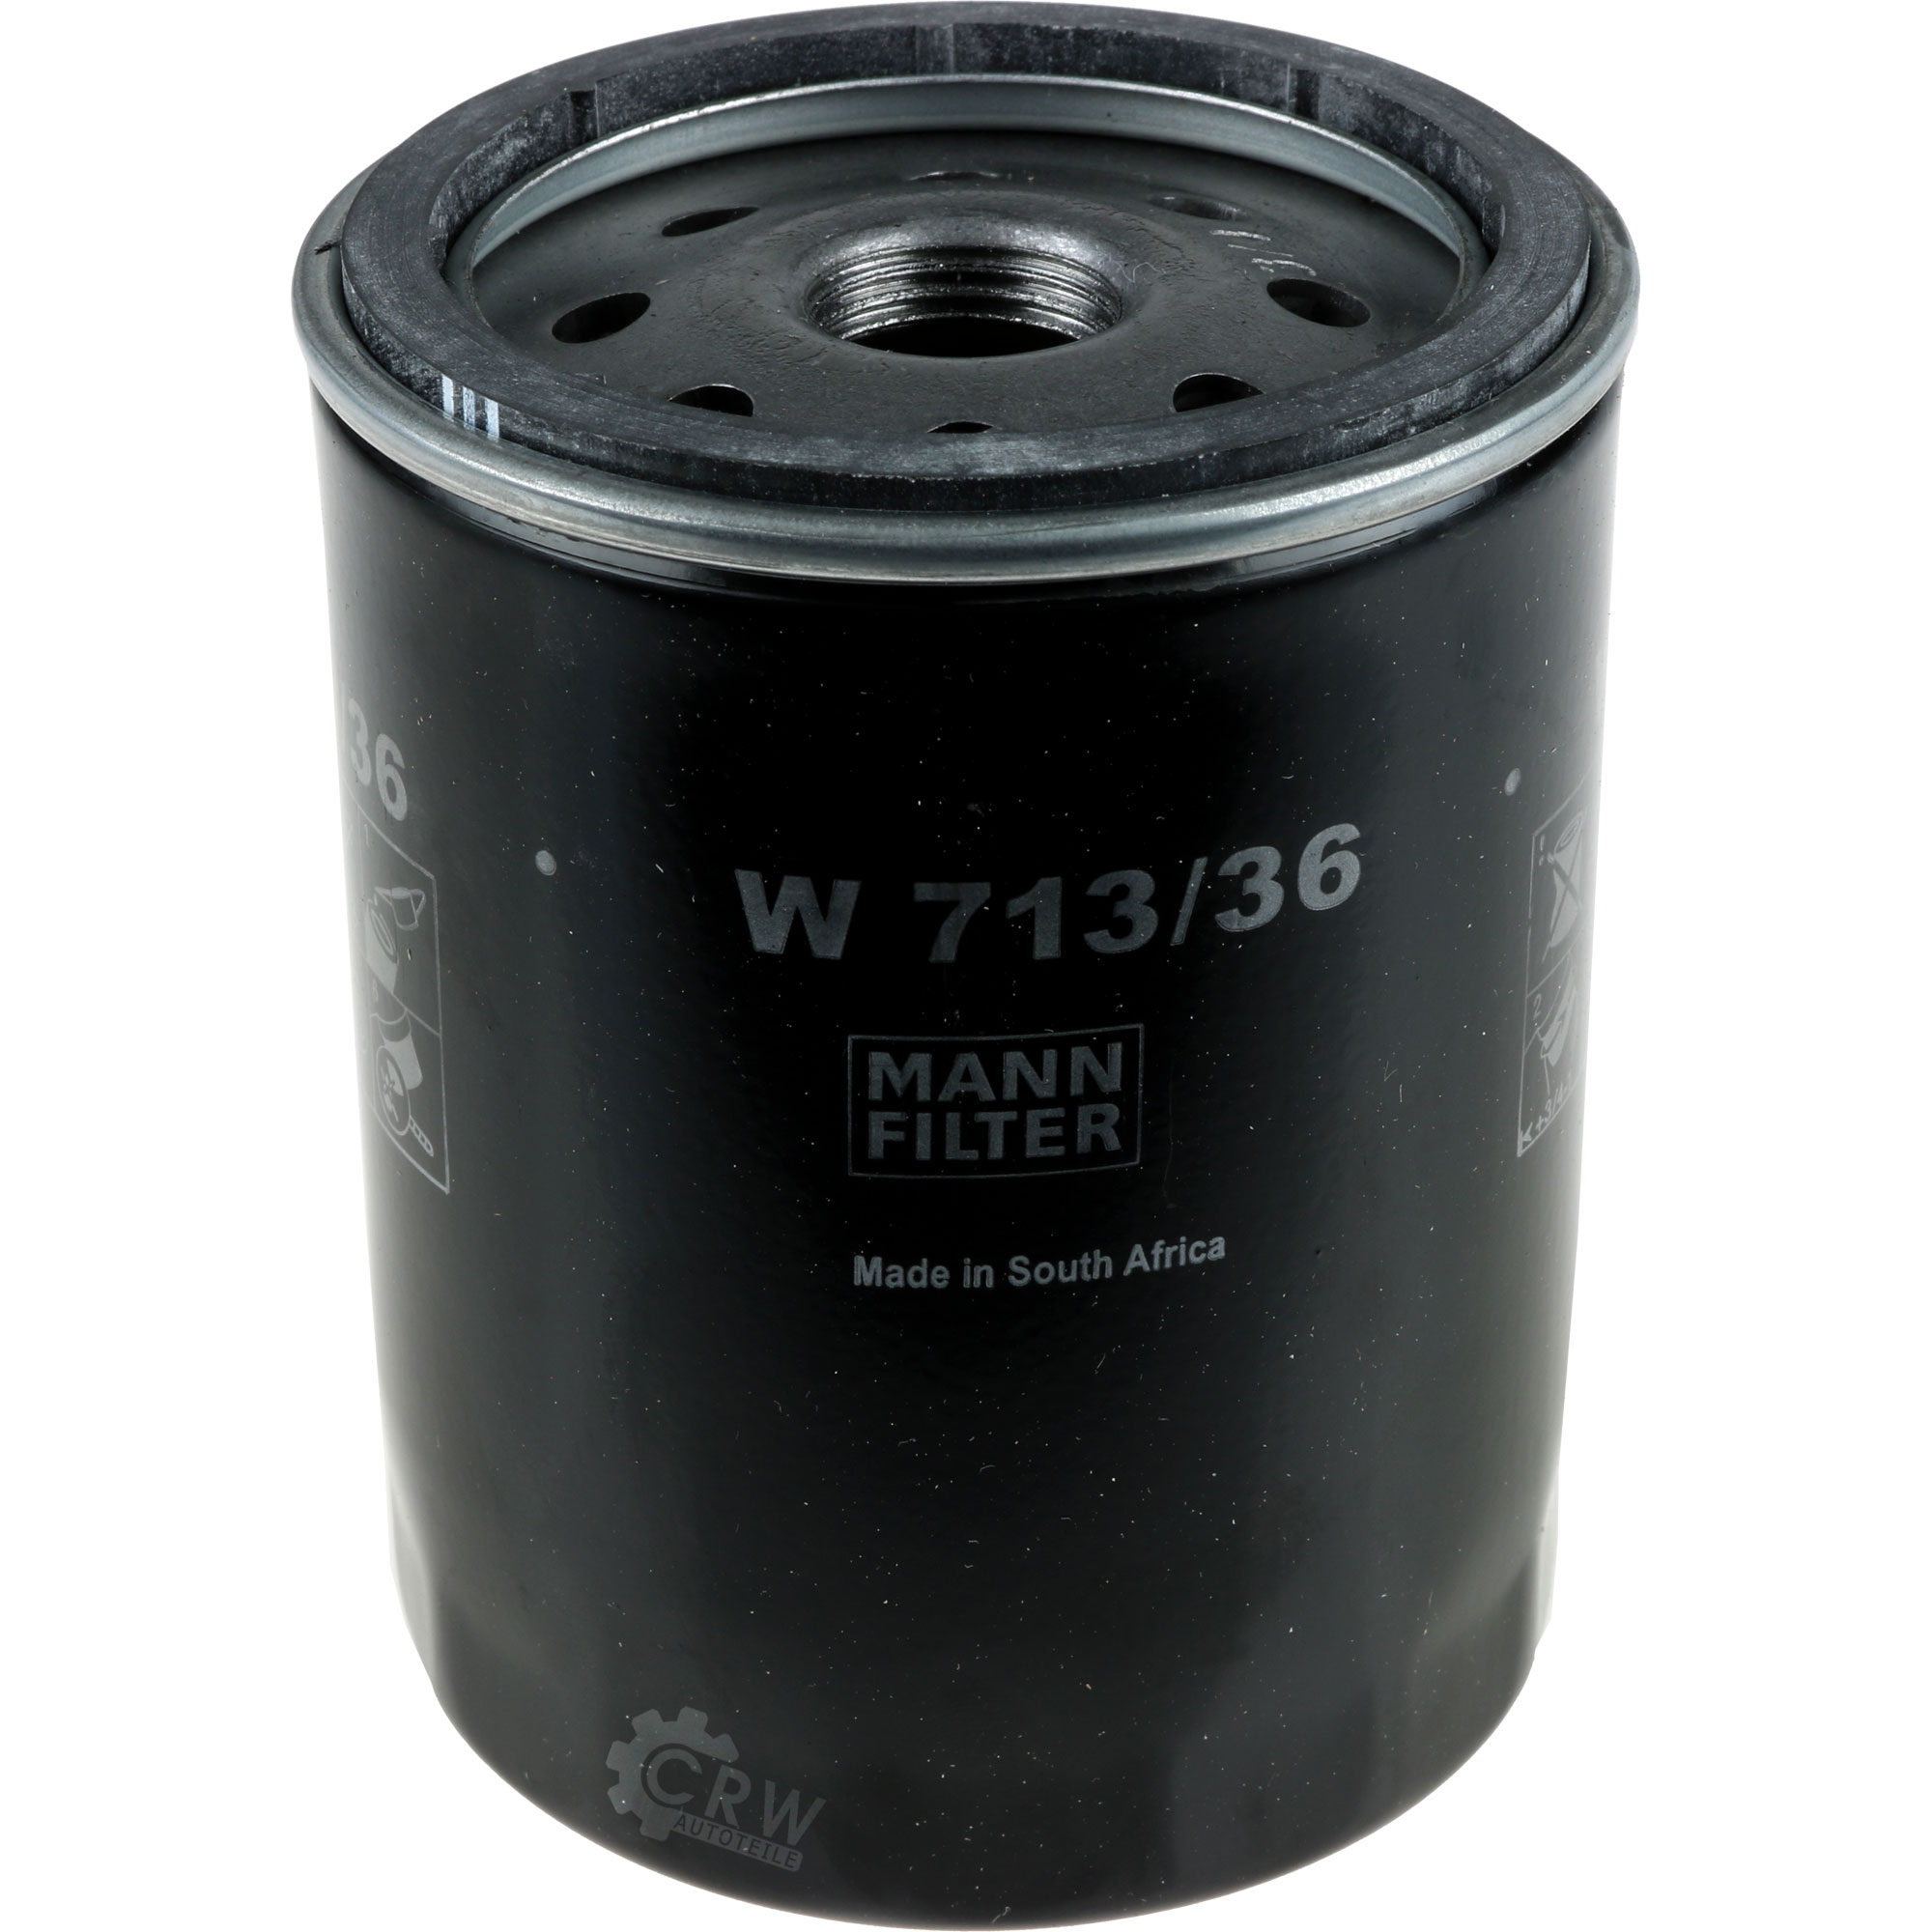 MANN-FILTER Ölfilter W 713/36 Oil Filter